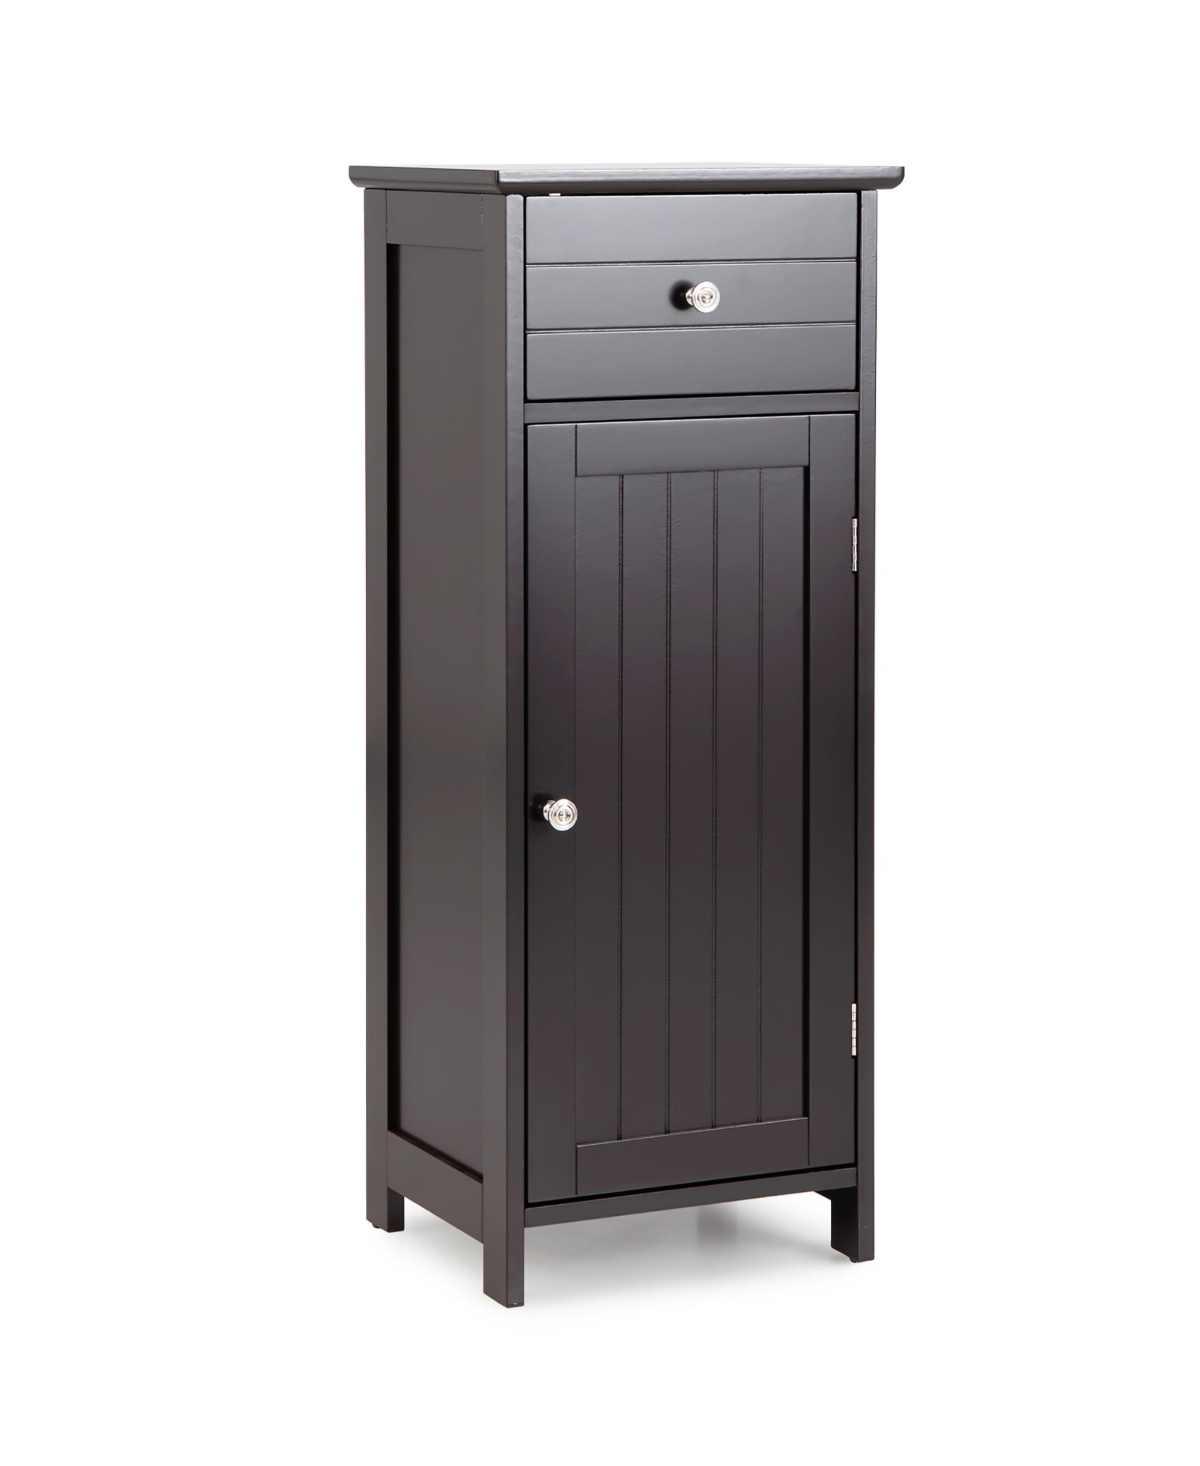 Wooden Bathroom Floor Storage Cabinet Organizer w/ Drawer Adjustable Shelf - Grey